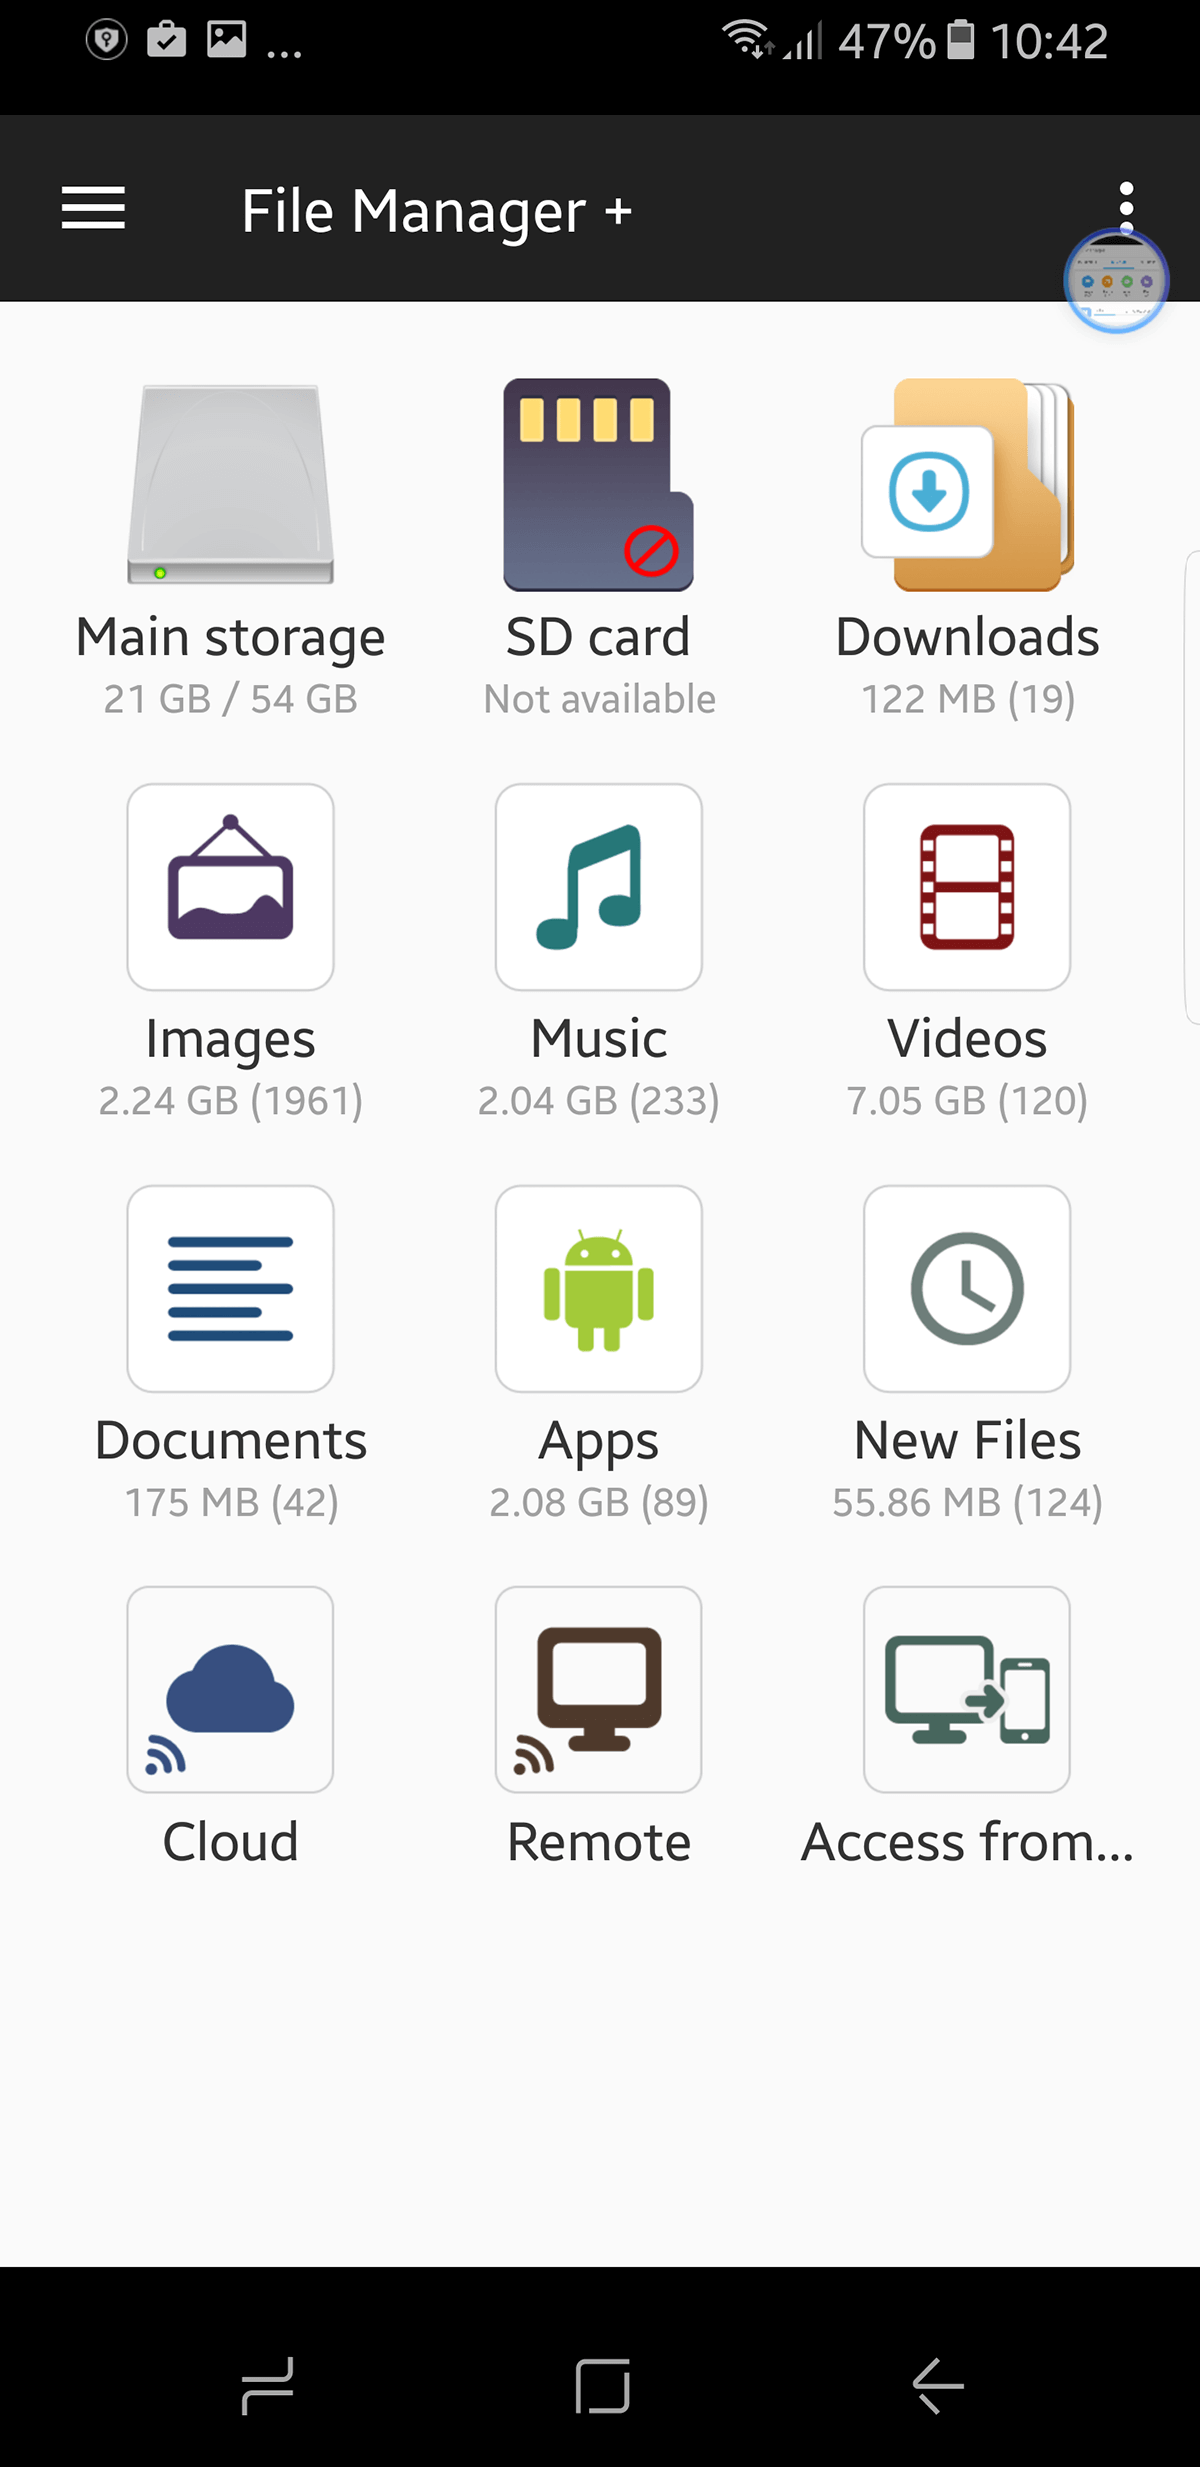 File Manager App Download